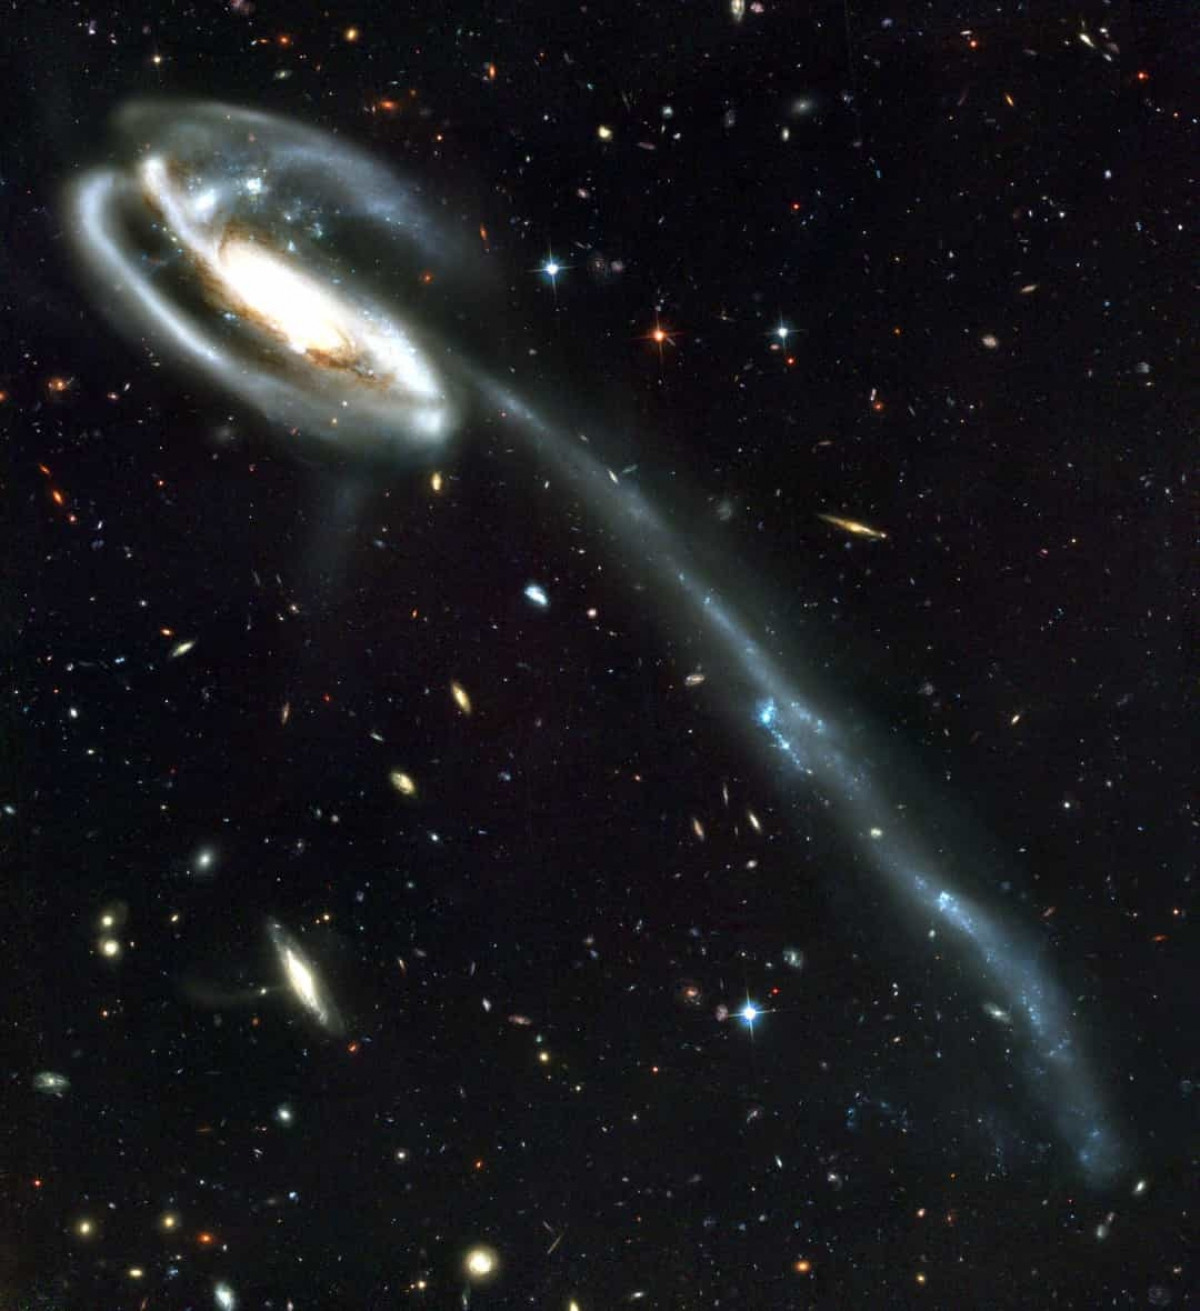 NGC 4889 là một thiên hà elip khổng lồ nằm cách Trái Đất 308 triệu năm ánh sáng và có đường kính là 239.000 năm ánh sáng. Thiên hà này có một hố đen ở trung tâm với chiều rộng từ 20 - 124 tỷ km. Thiên hà NGC 4889 được tạo thành từ 10.000 thiên hà nhỏ hơn trở lên.